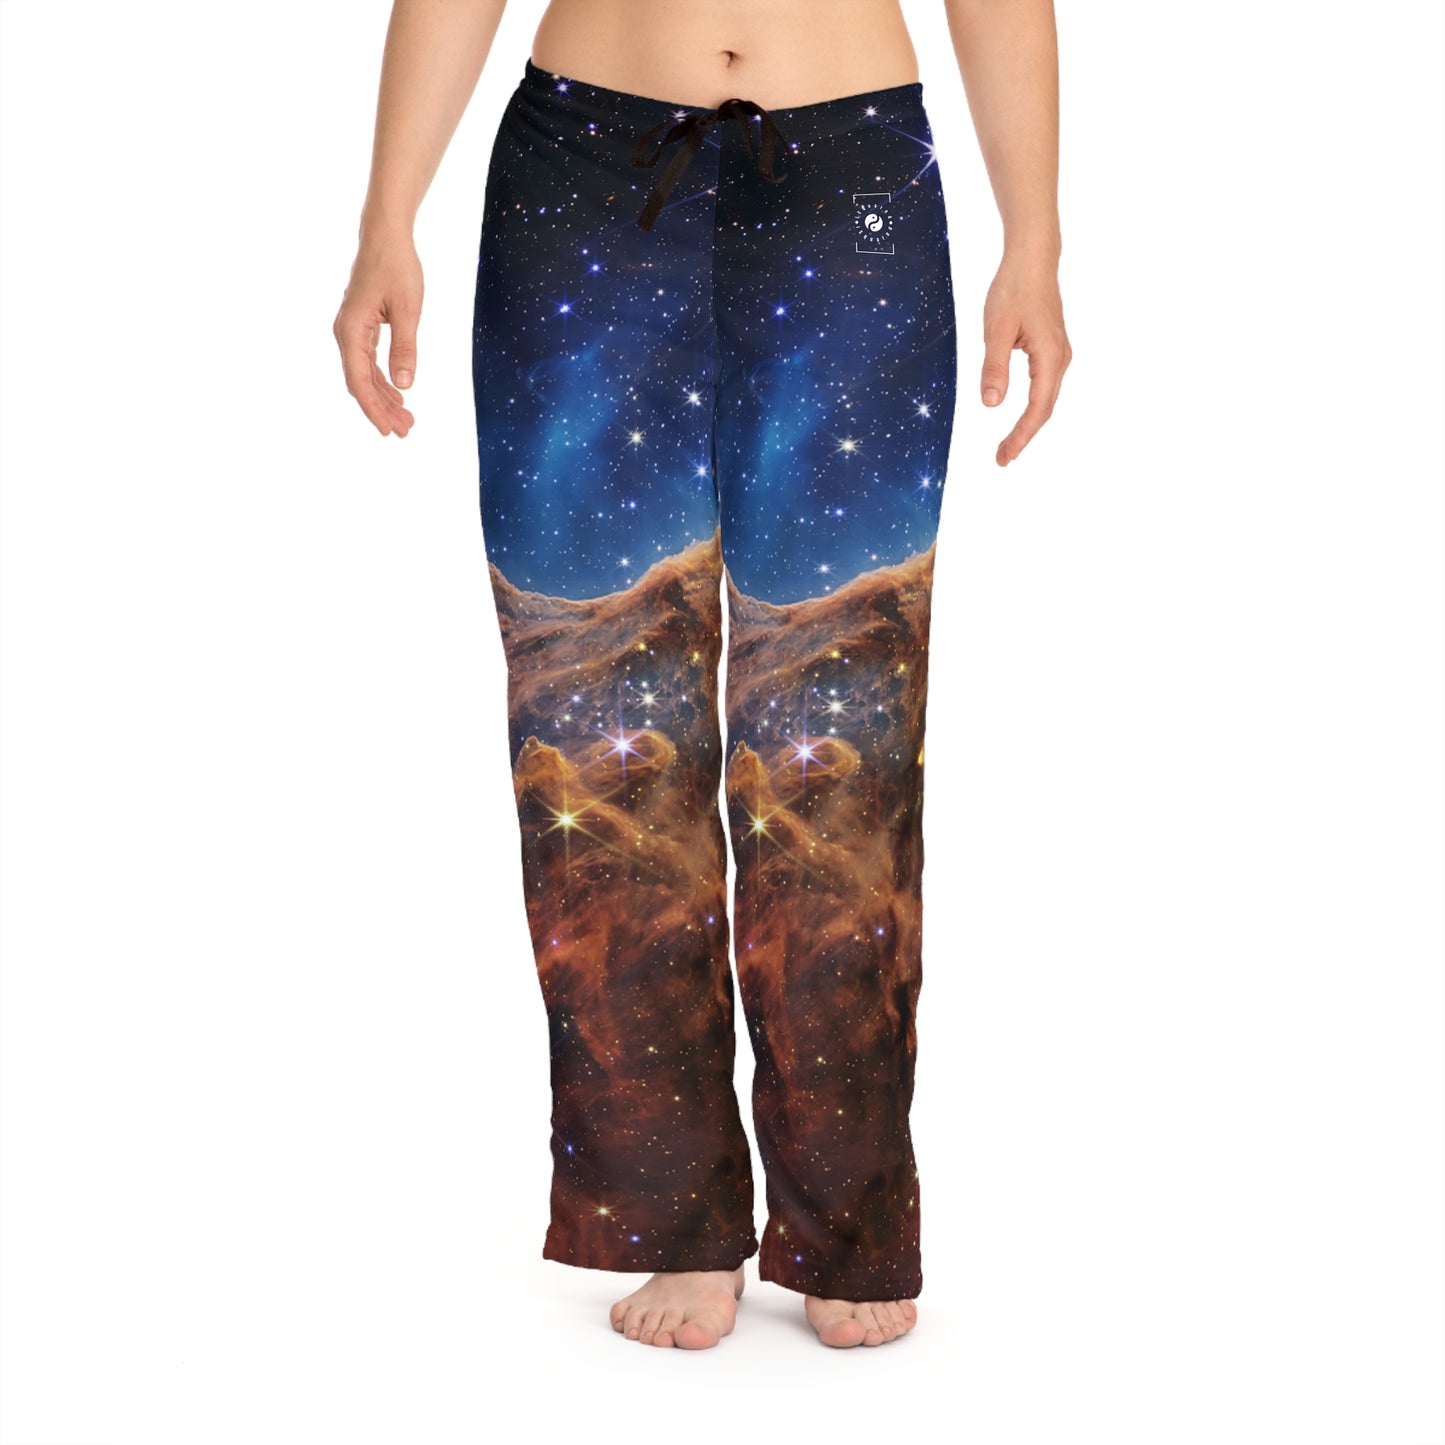 « Falaises cosmiques » dans la nébuleuse de la Carène (Image NIRCam) - Collection JWST - Pantalons de détente pour femmes